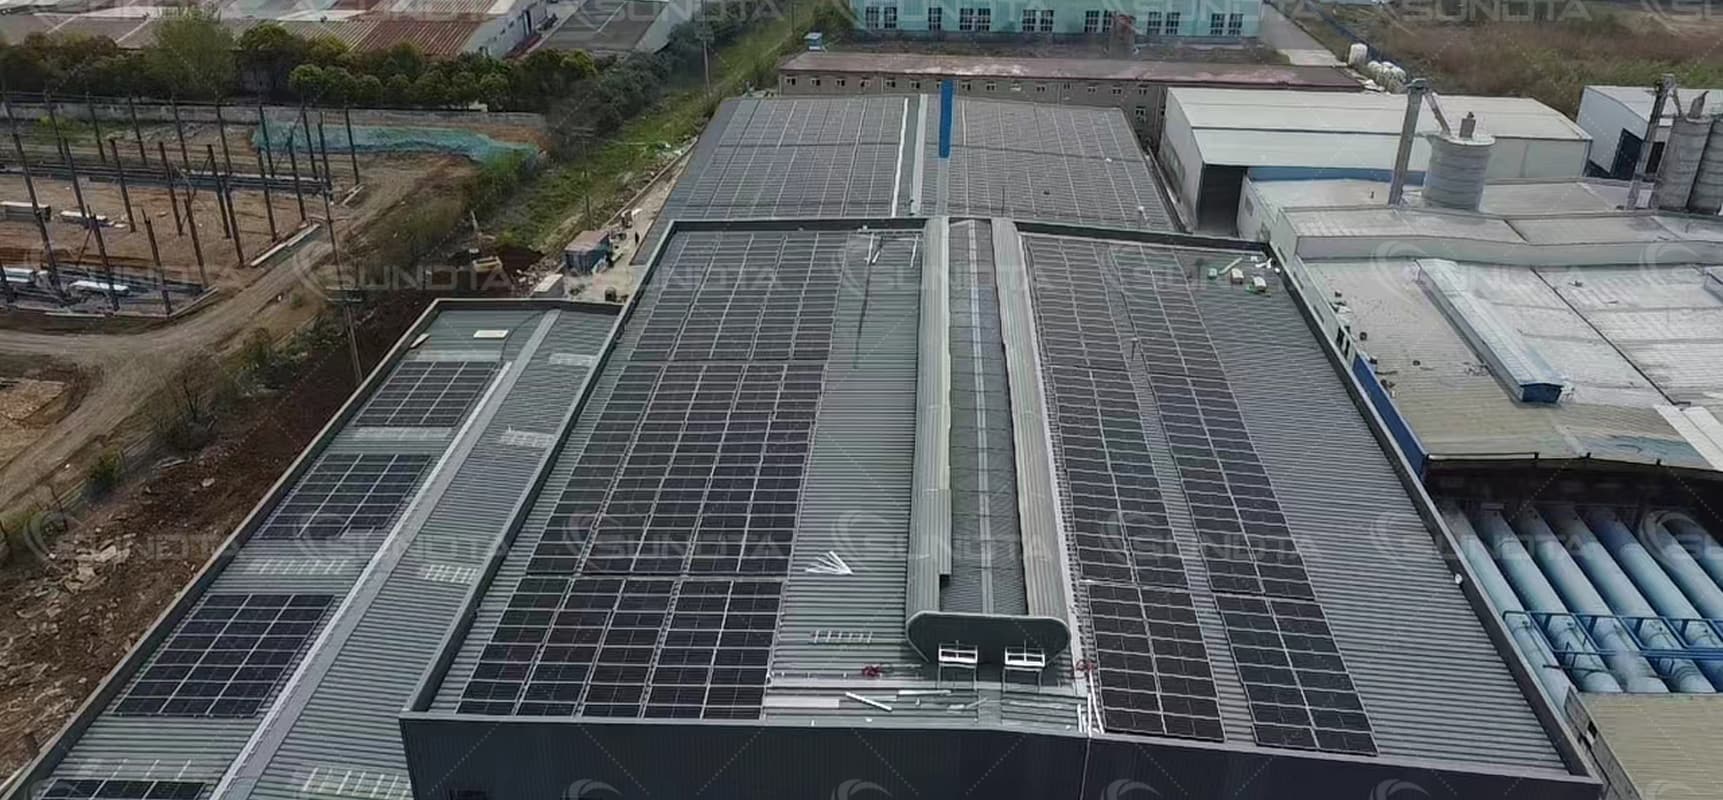 El proyecto fotovoltaico distribuido en tejados SUNDTA en China se conectó con éxito a la red